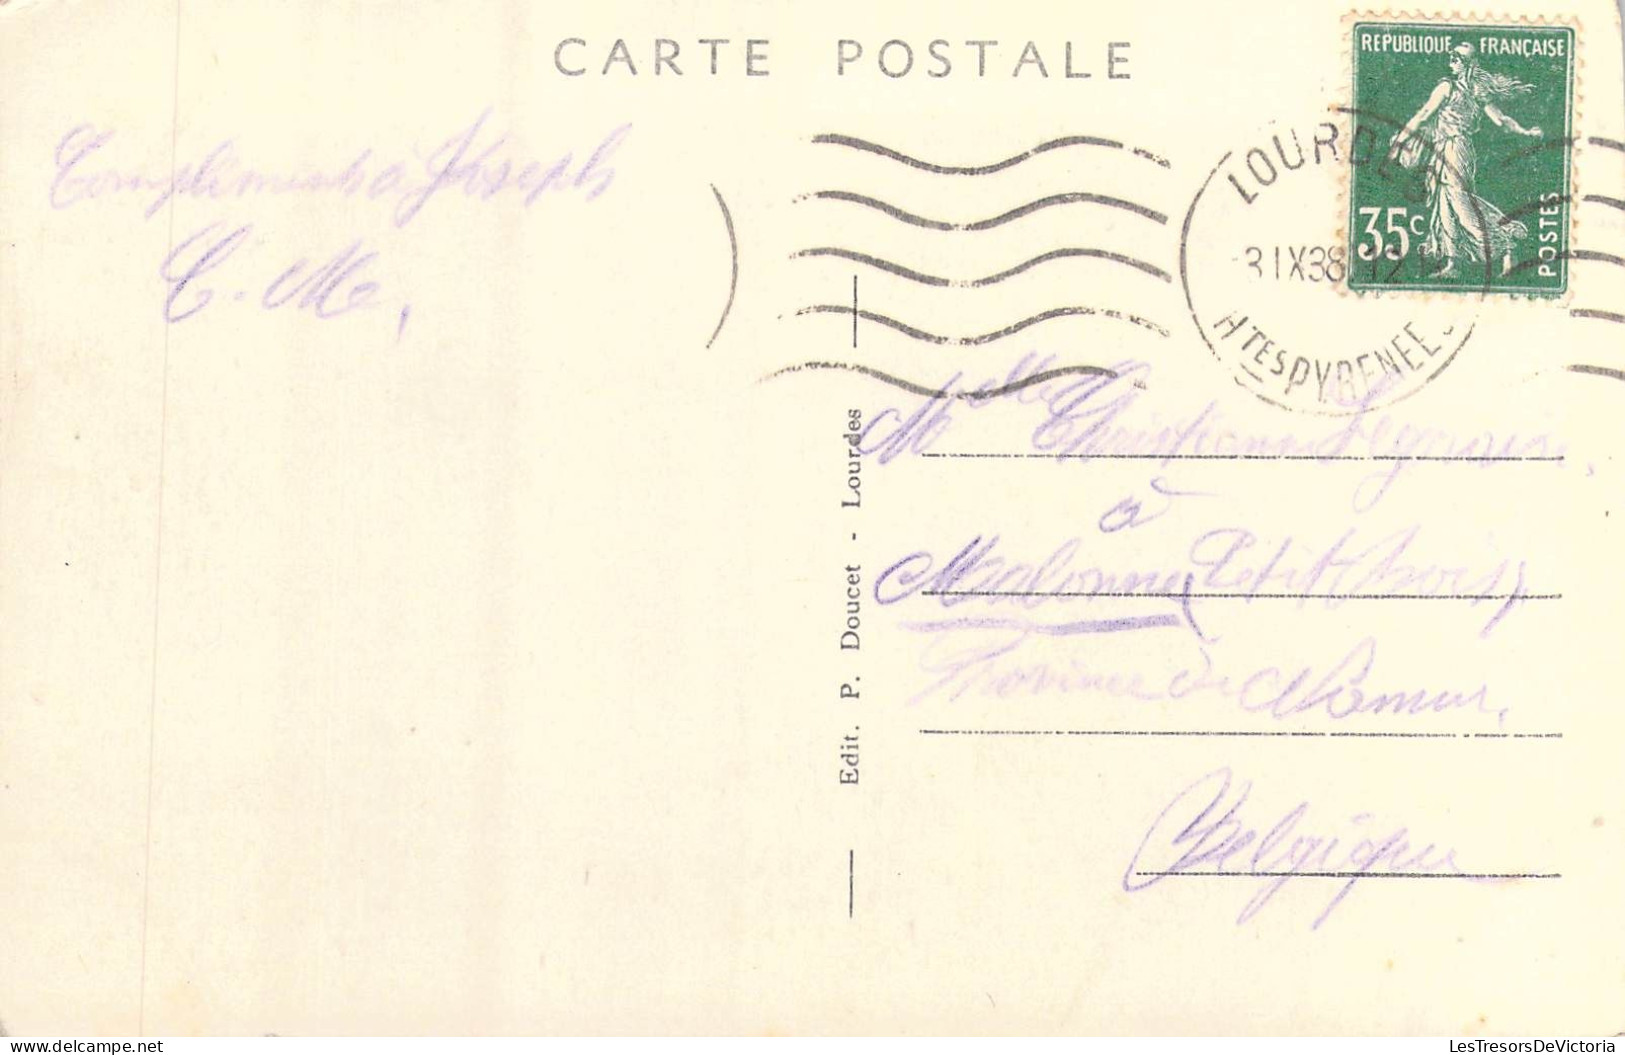 FRANCE - 65 - Lourdes - La Basilique P.D. - Carte Postale Ancienne - Lourdes